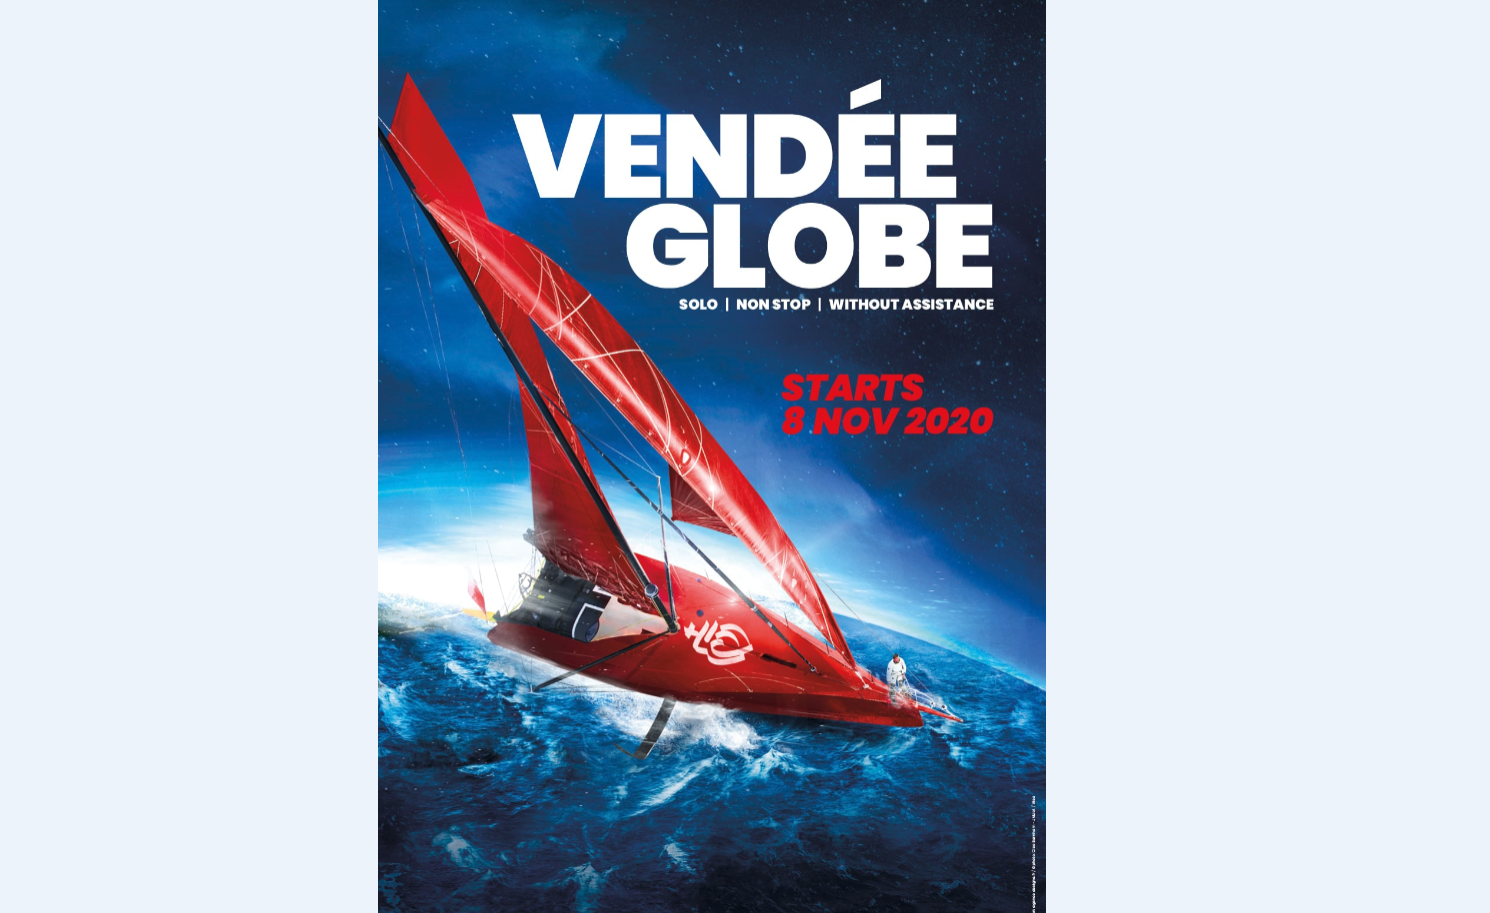 The 2020 Vendée Globe will start on 8th November